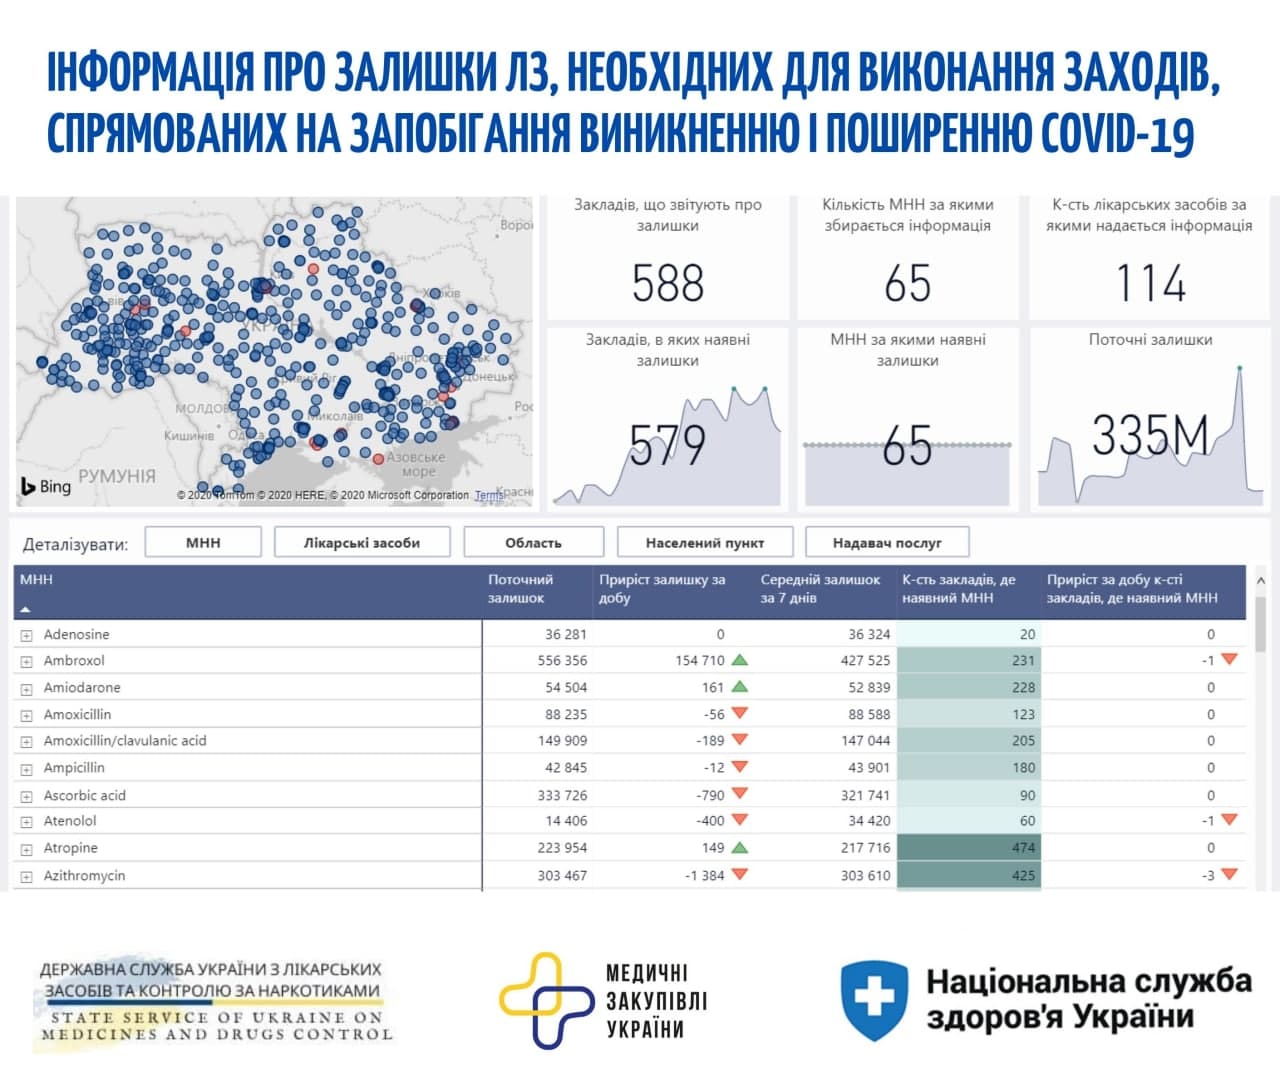 В Украине появилась карта наличия в больницах и аптеках лекарств от ковида